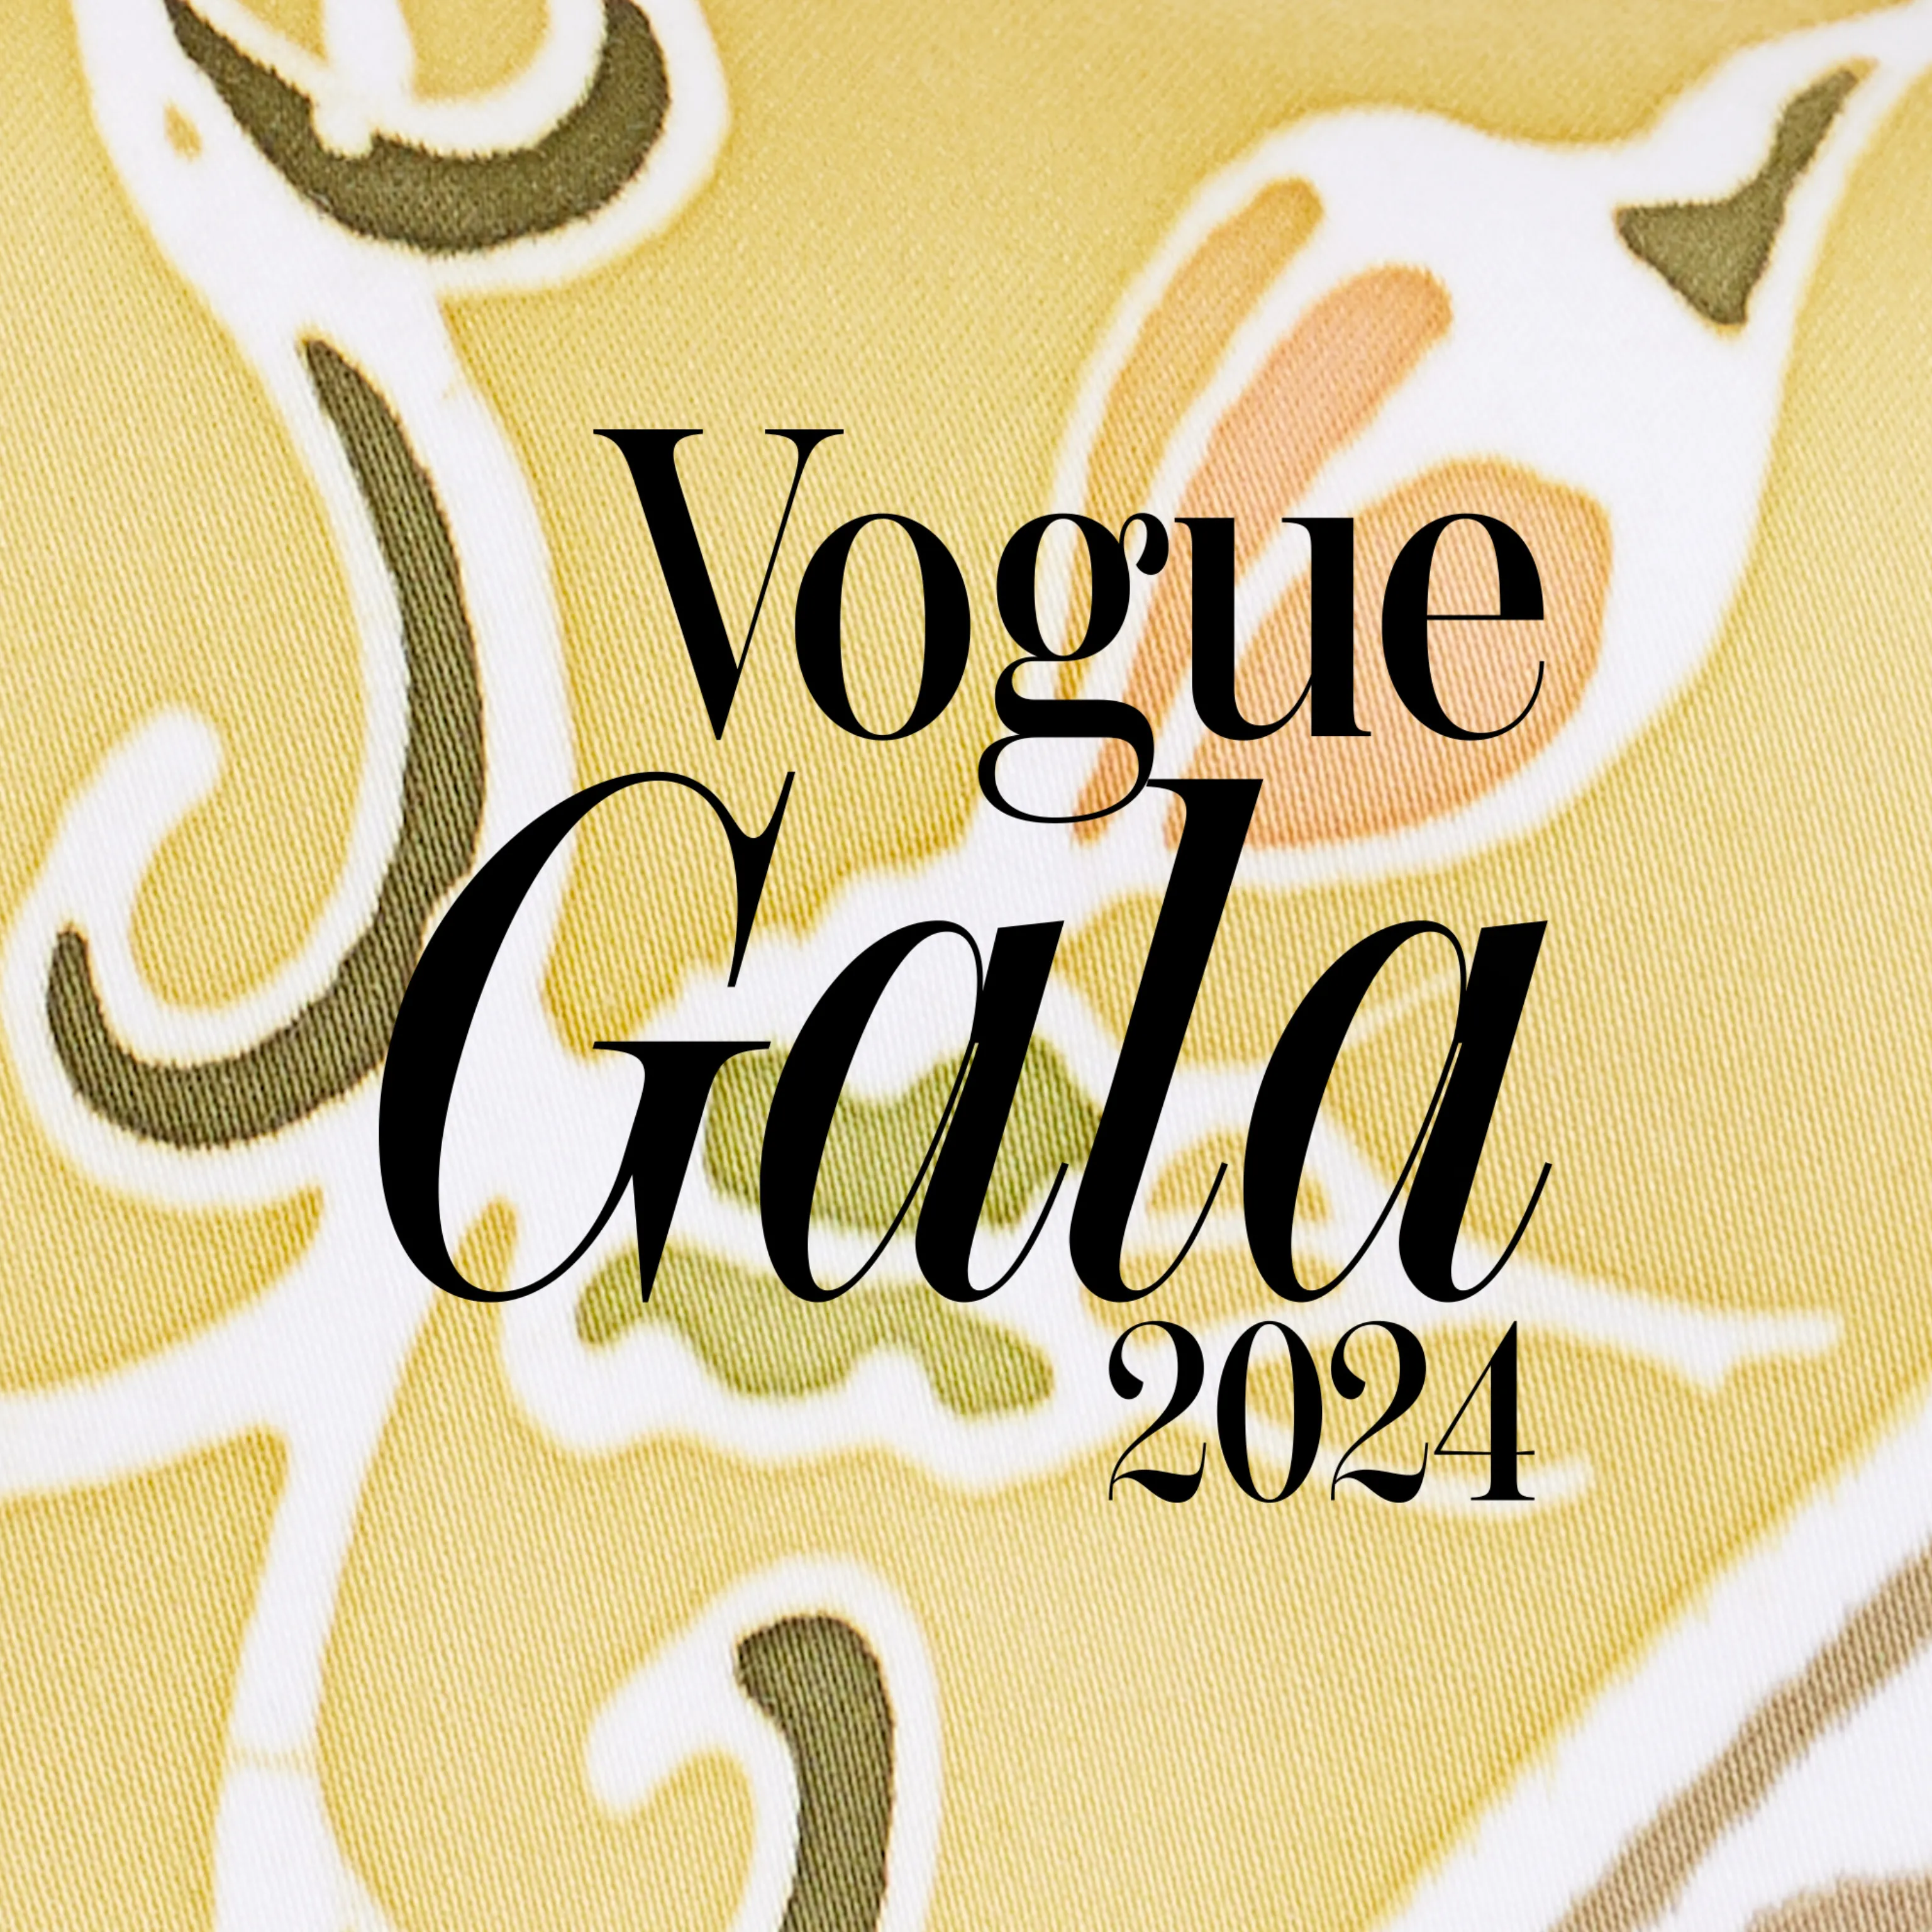 Vogue Gala 2024 auction items